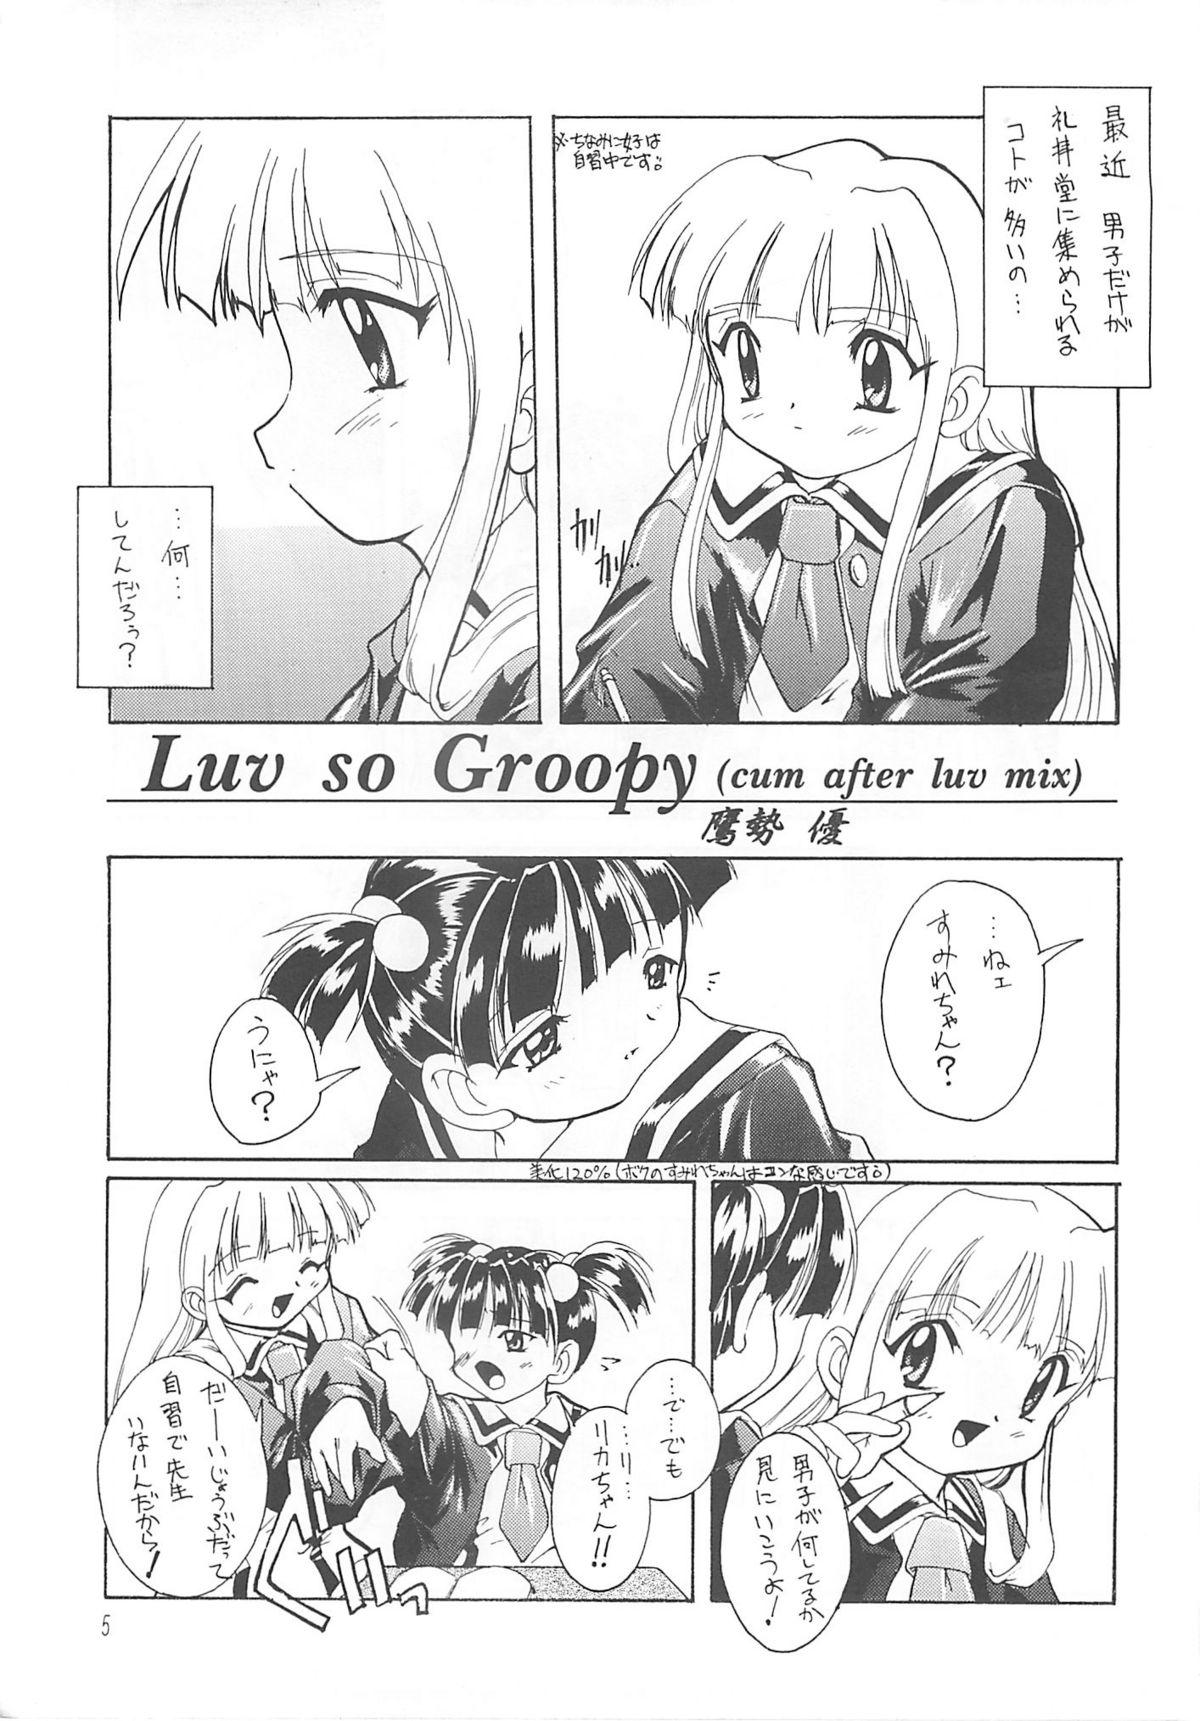 Voyeursex Kanzen Nenshou 3 - Super doll licca-chan Ninfeta - Page 4